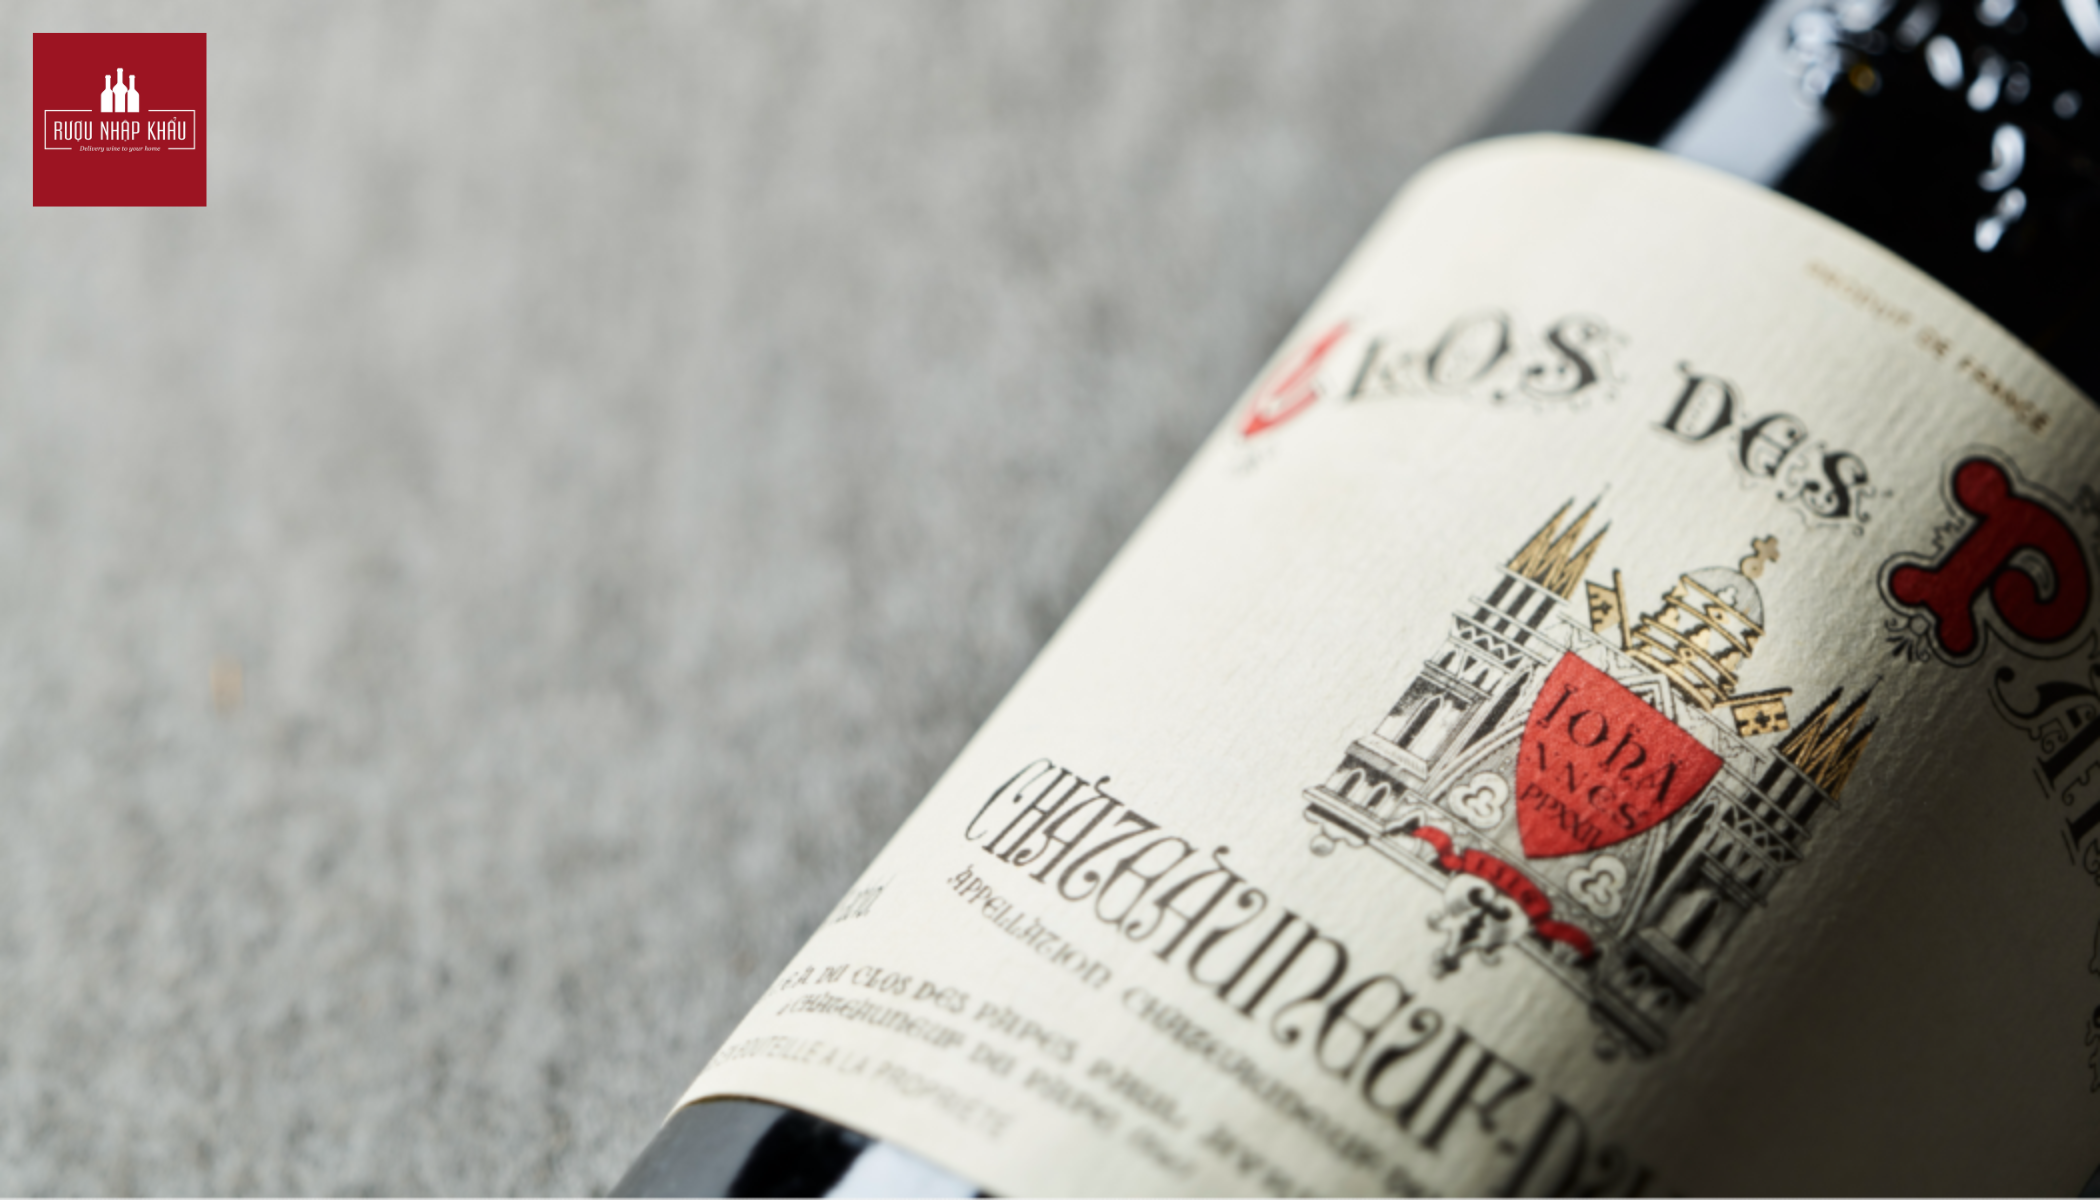 Chateauneuf-du-Pape: Loại rượu vang đỏ hảo hạng của vùng Rhône